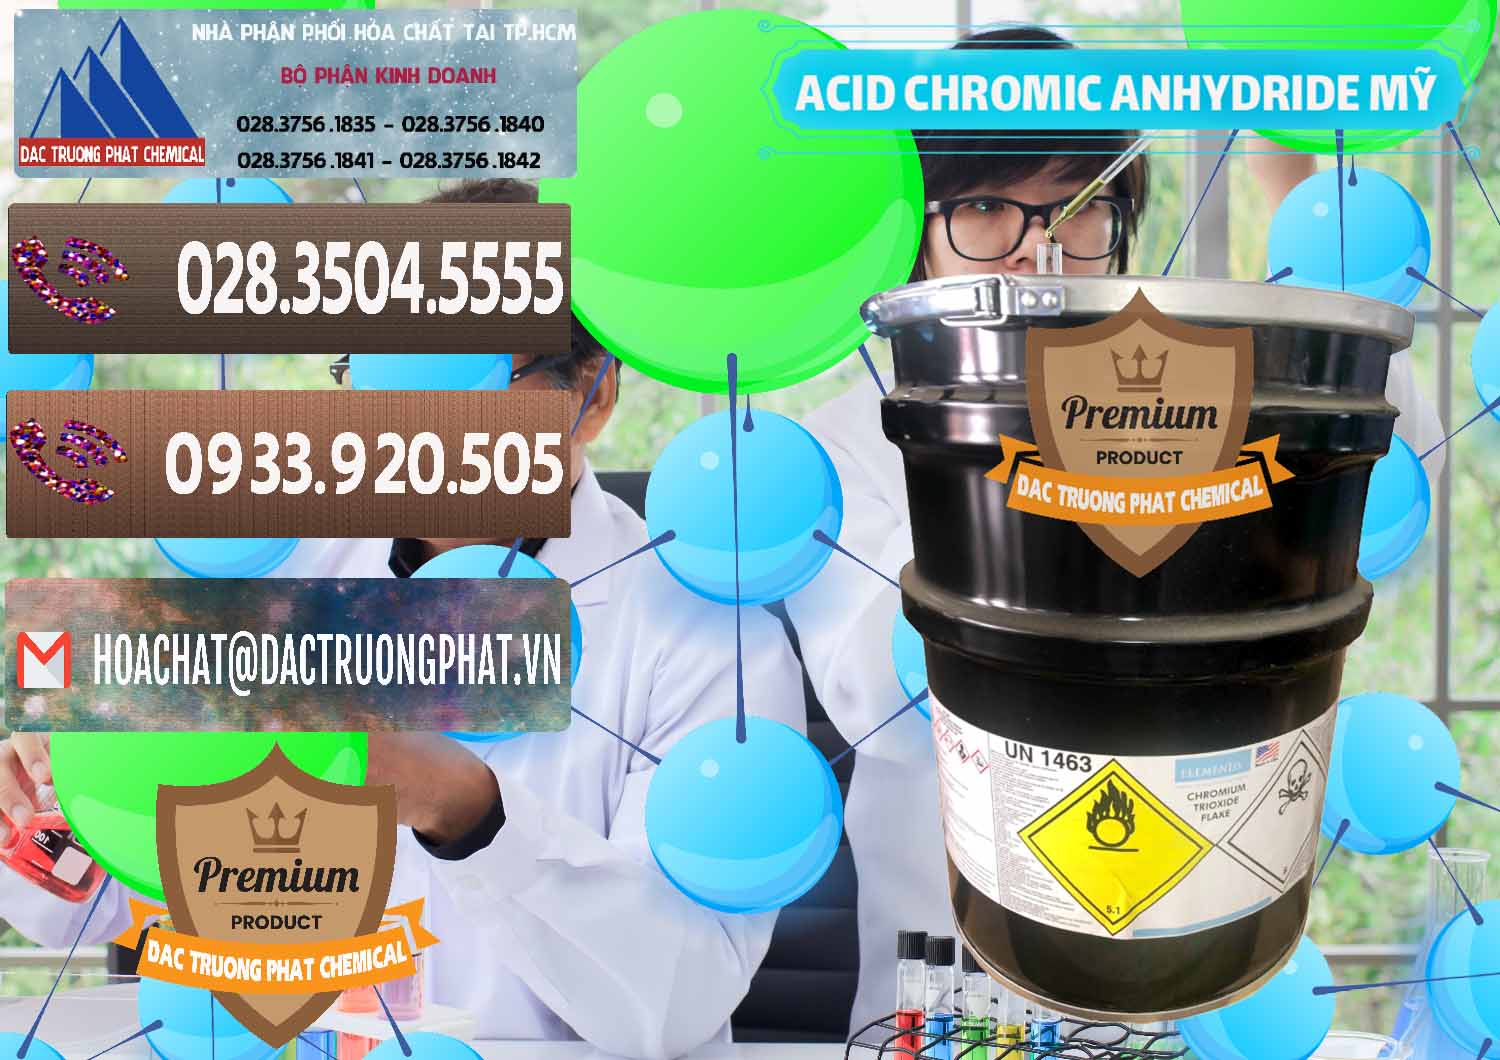 Cty bán _ cung ứng Acid Chromic Anhydride - Cromic CRO3 USA Mỹ - 0364 - Cty cung cấp và bán hóa chất tại TP.HCM - hoachatviet.net